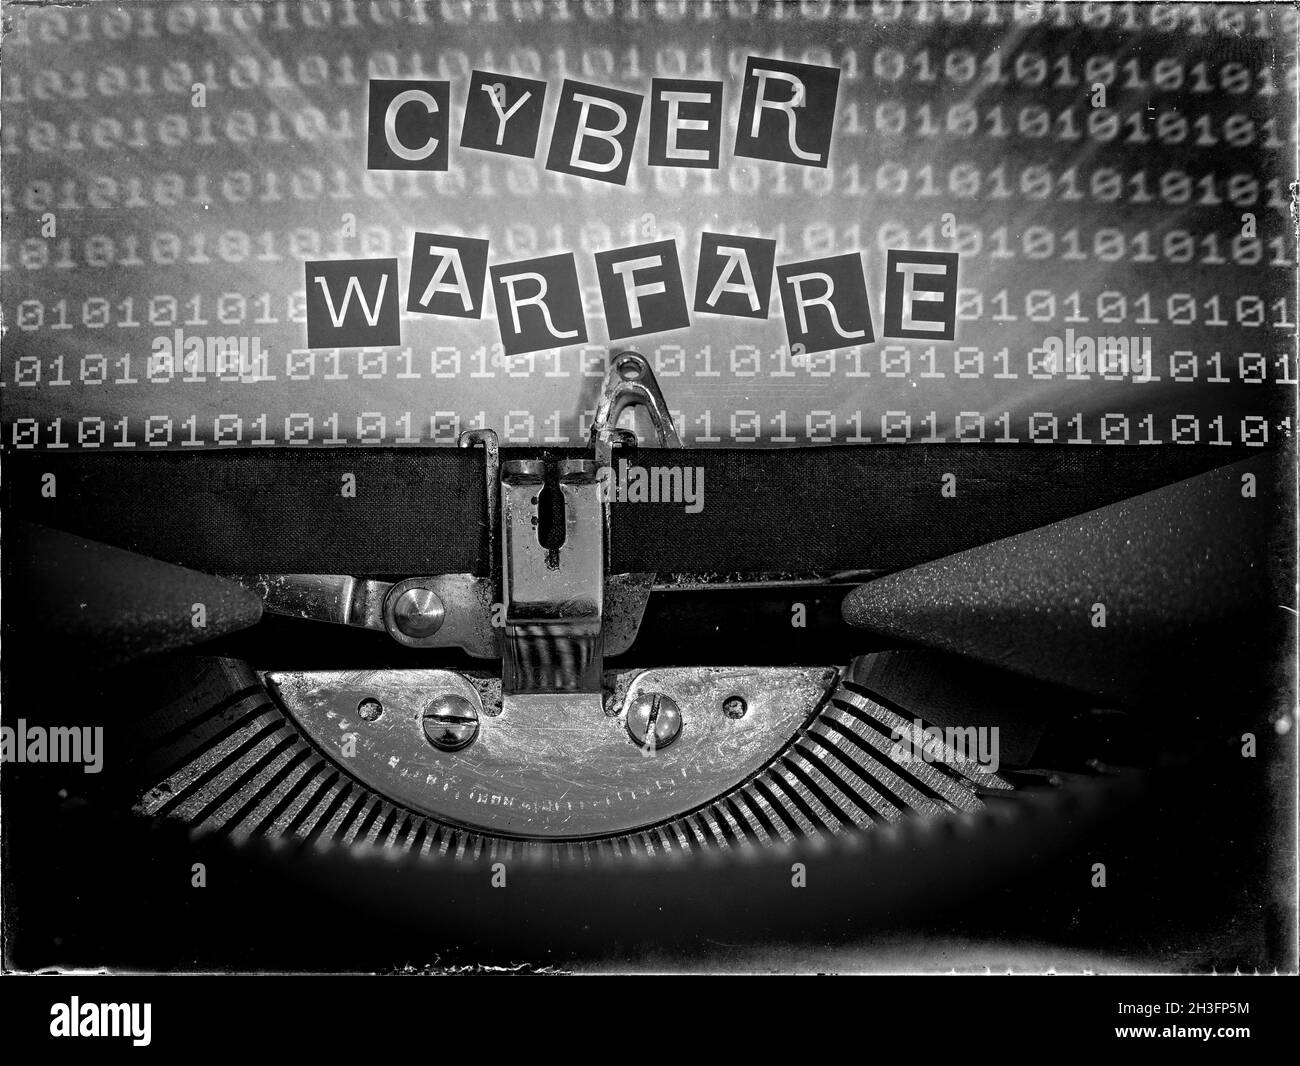 Schreibmaschine, die Cyber Warfare anzeigt Stockfoto